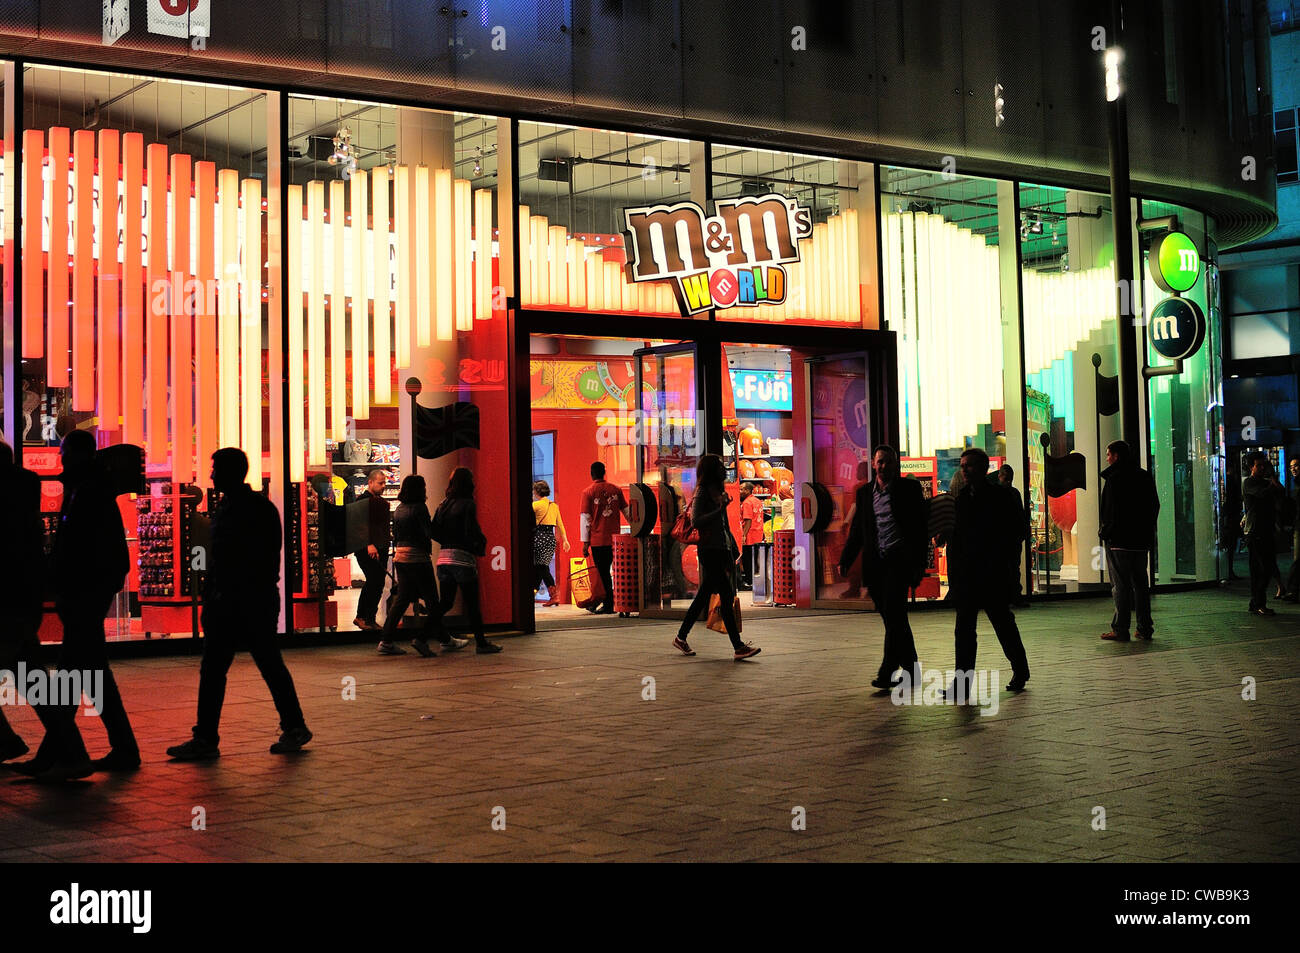 Fassade des M & M speichern Central London bei Nacht Stockfoto